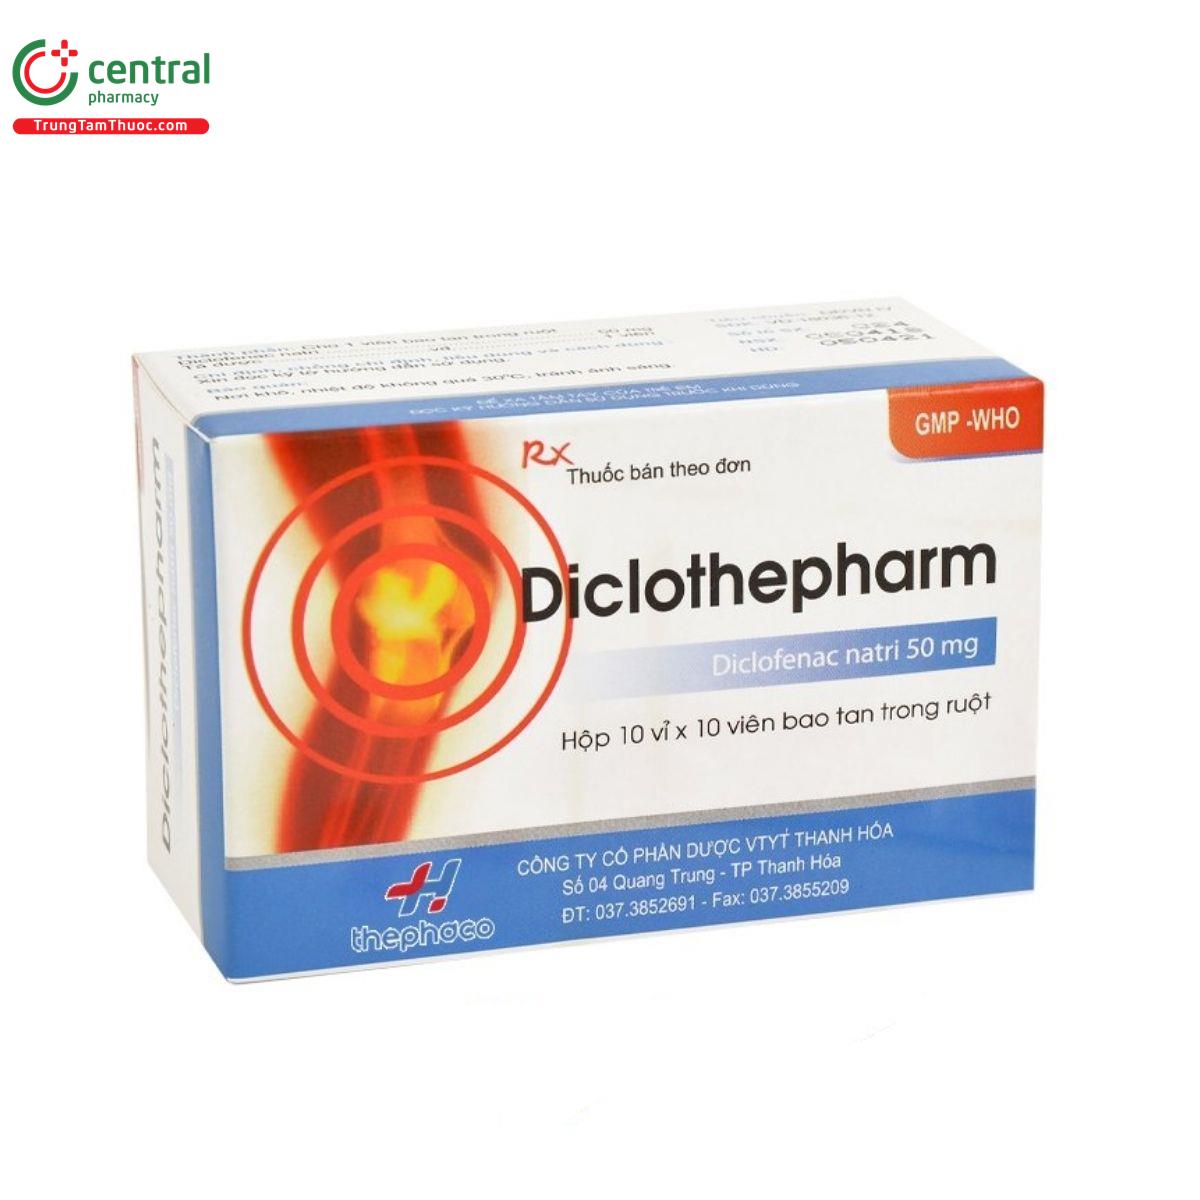 diclothepharm 3 O6071